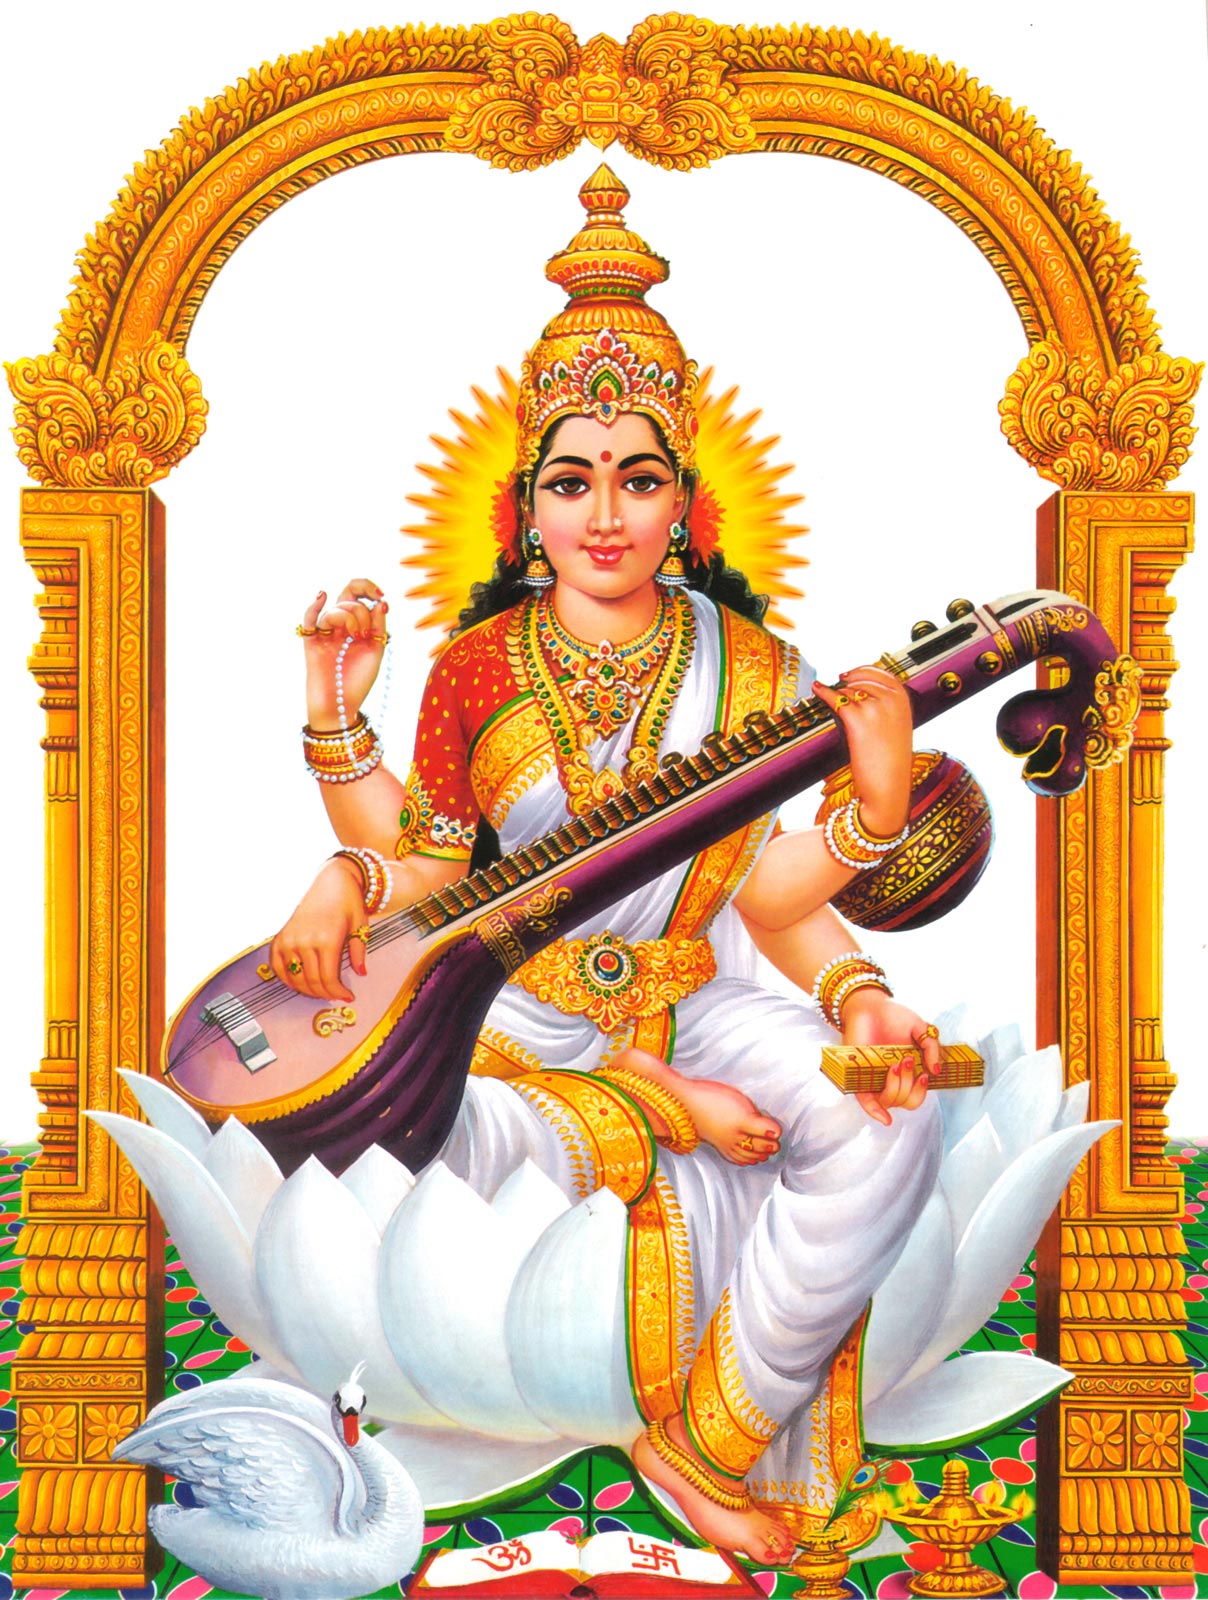 sfondo dio indù hd 1920x1080,strumenti musicali indiani,strumenti a corda pizzicati,strumento musicale,guru,tempio indù